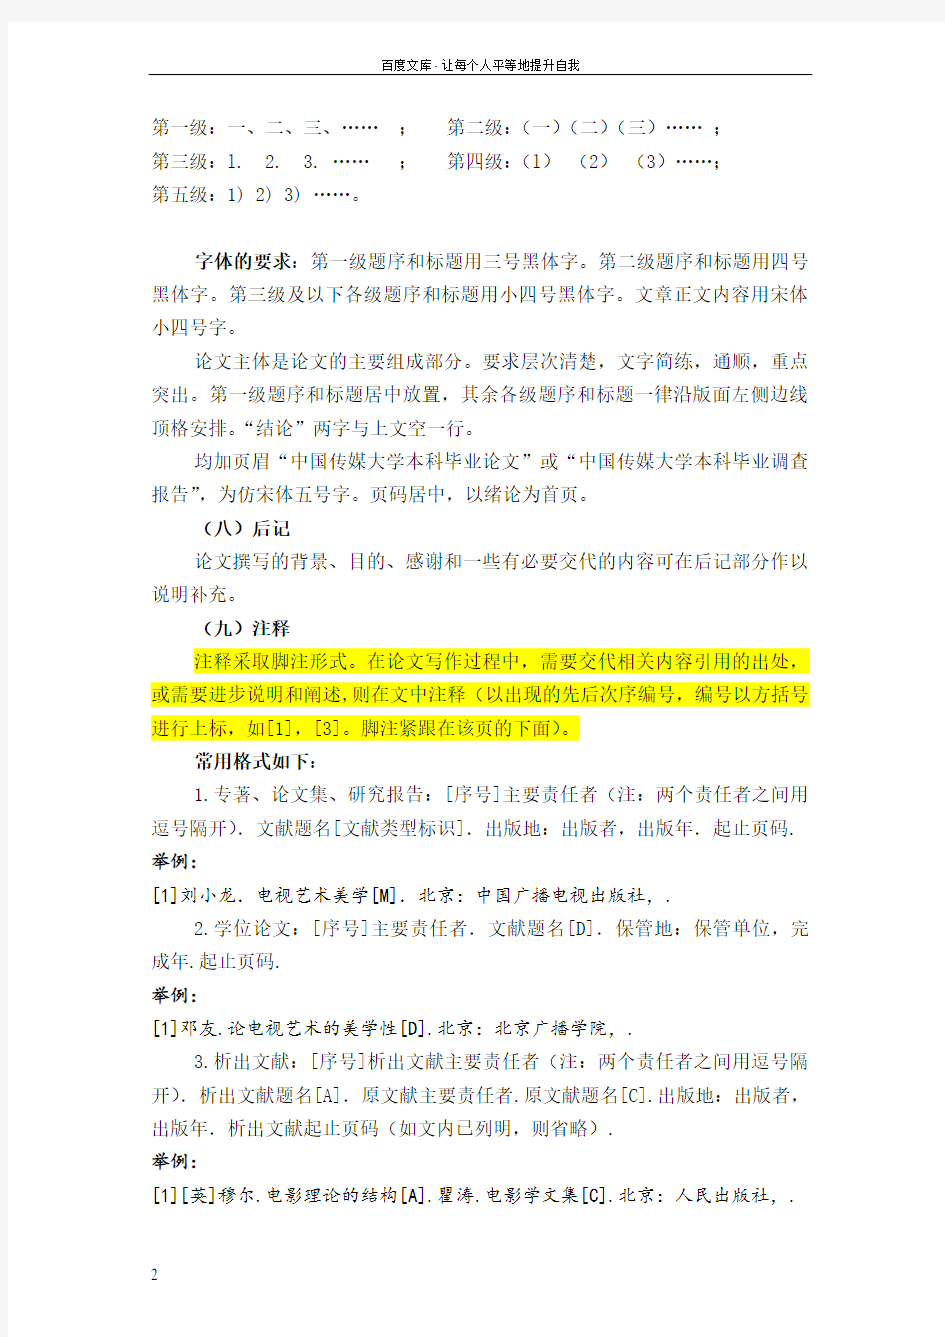 中国传媒大学毕业论文报告基本规范及格式要求